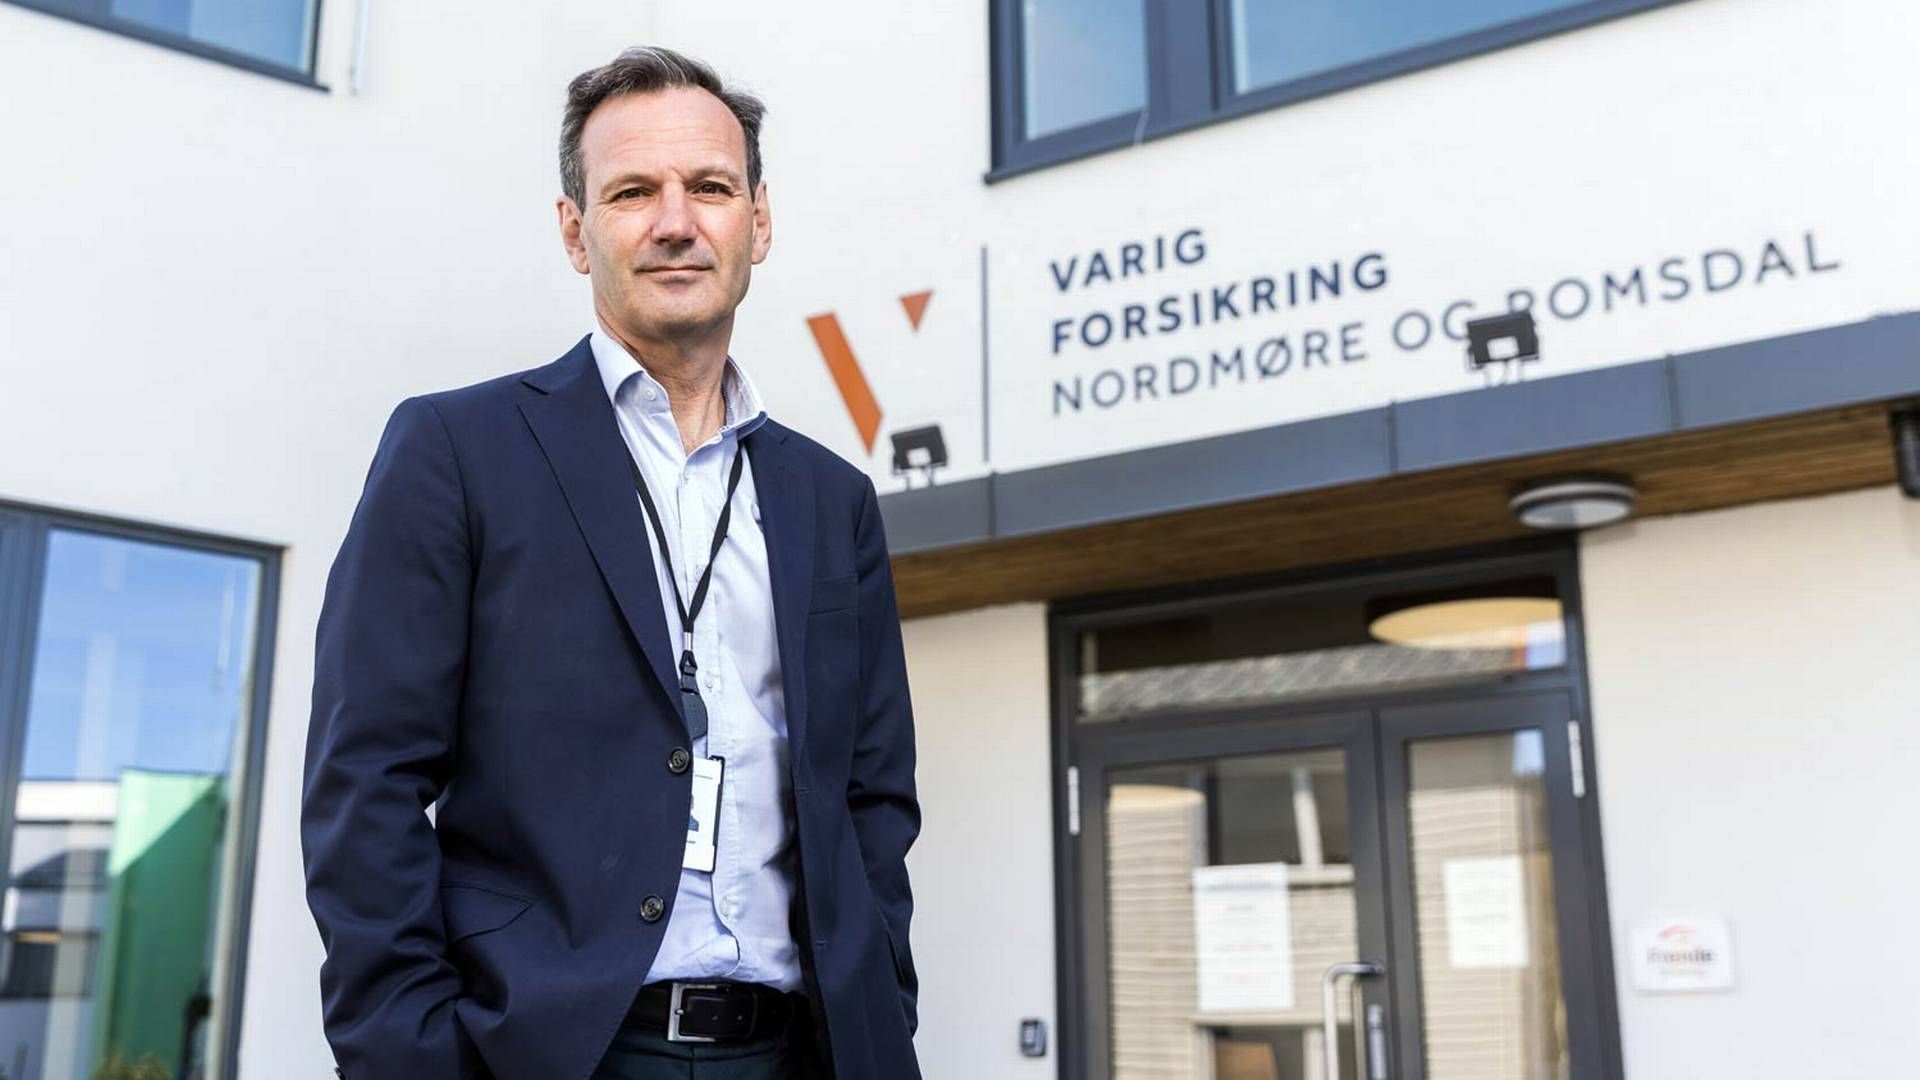 Administrerende direktør i Varig Forsikring Nordmøre og Romsdal, Vidar Skaar.